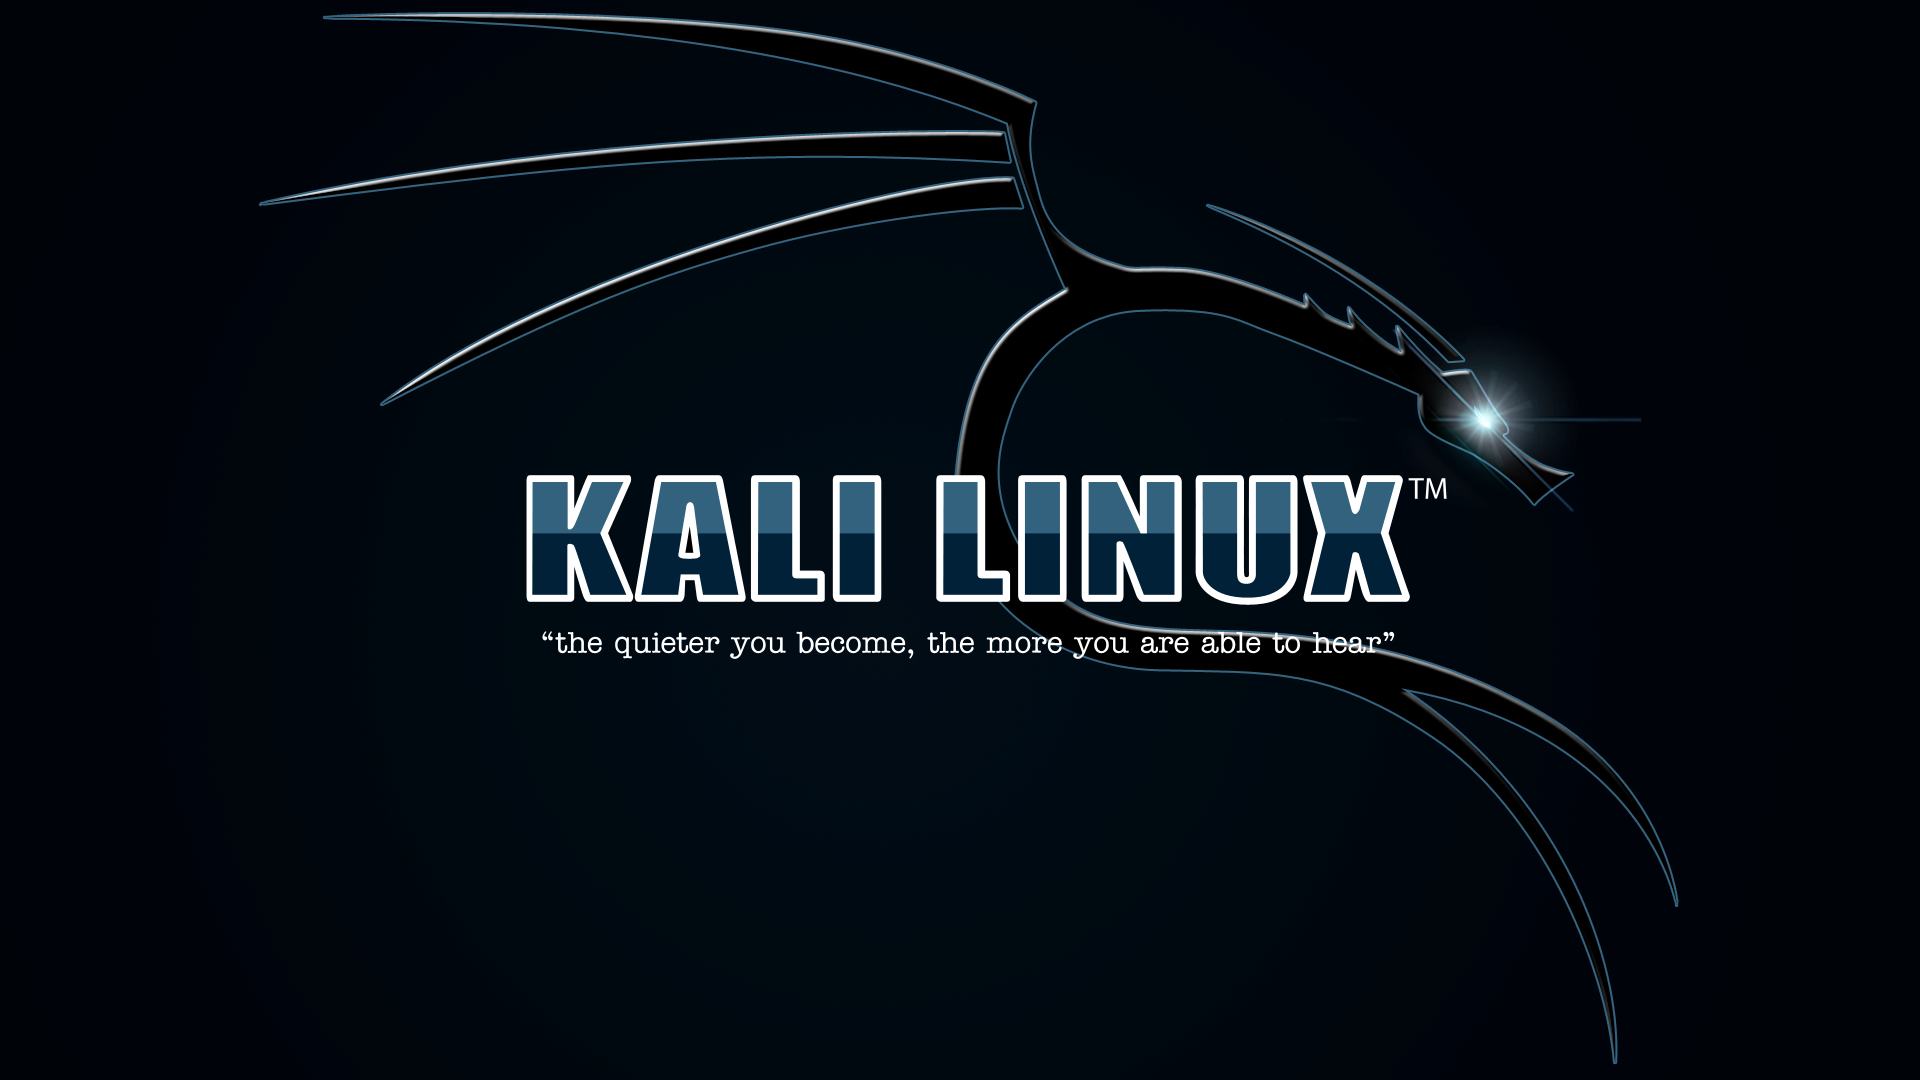 Kali Linux: Nếu bạn yêu thích Kali Linux, hãy chuẩn bị sẵn sàng cho một bức ảnh tuyệt đẹp liên quan đến hệ điều hành này! Hình ảnh này sẽ cung cấp cho bạn những thông tin mới nhất về HĐH Kali Linux, với chất lượng hình ảnh tuyệt đẹp sẽ khiến bạn thích thú.